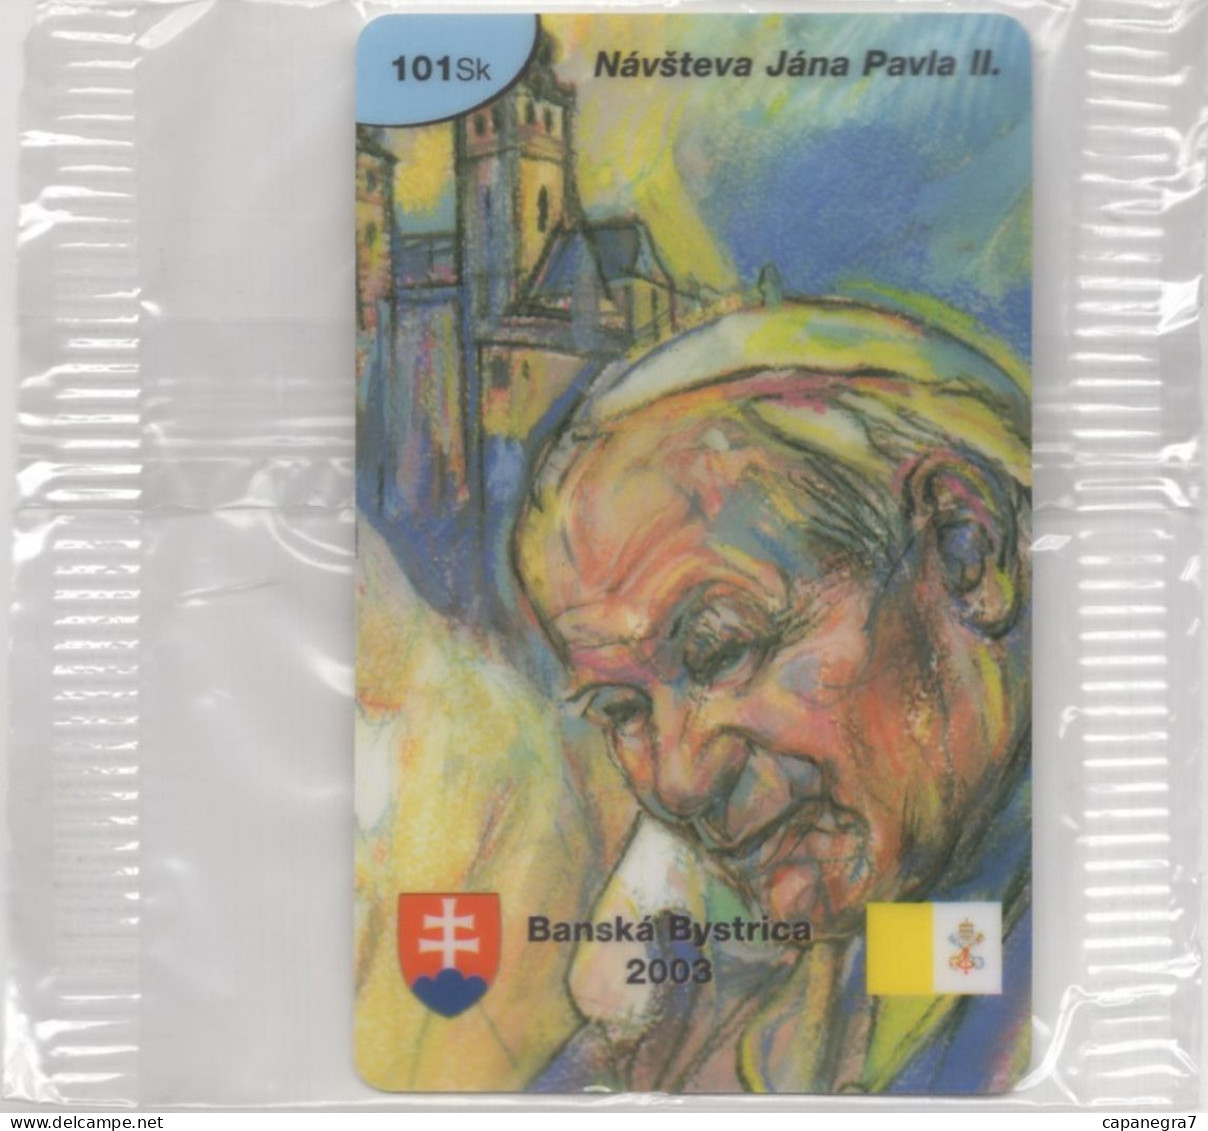 Pope John Paulu II. - Banská Bystica 2003, Prepaid Calling Card, 101 Sk., 1.250 Pc., GlobalIPhone, Slovak, Mint, Packed - Slovacchia